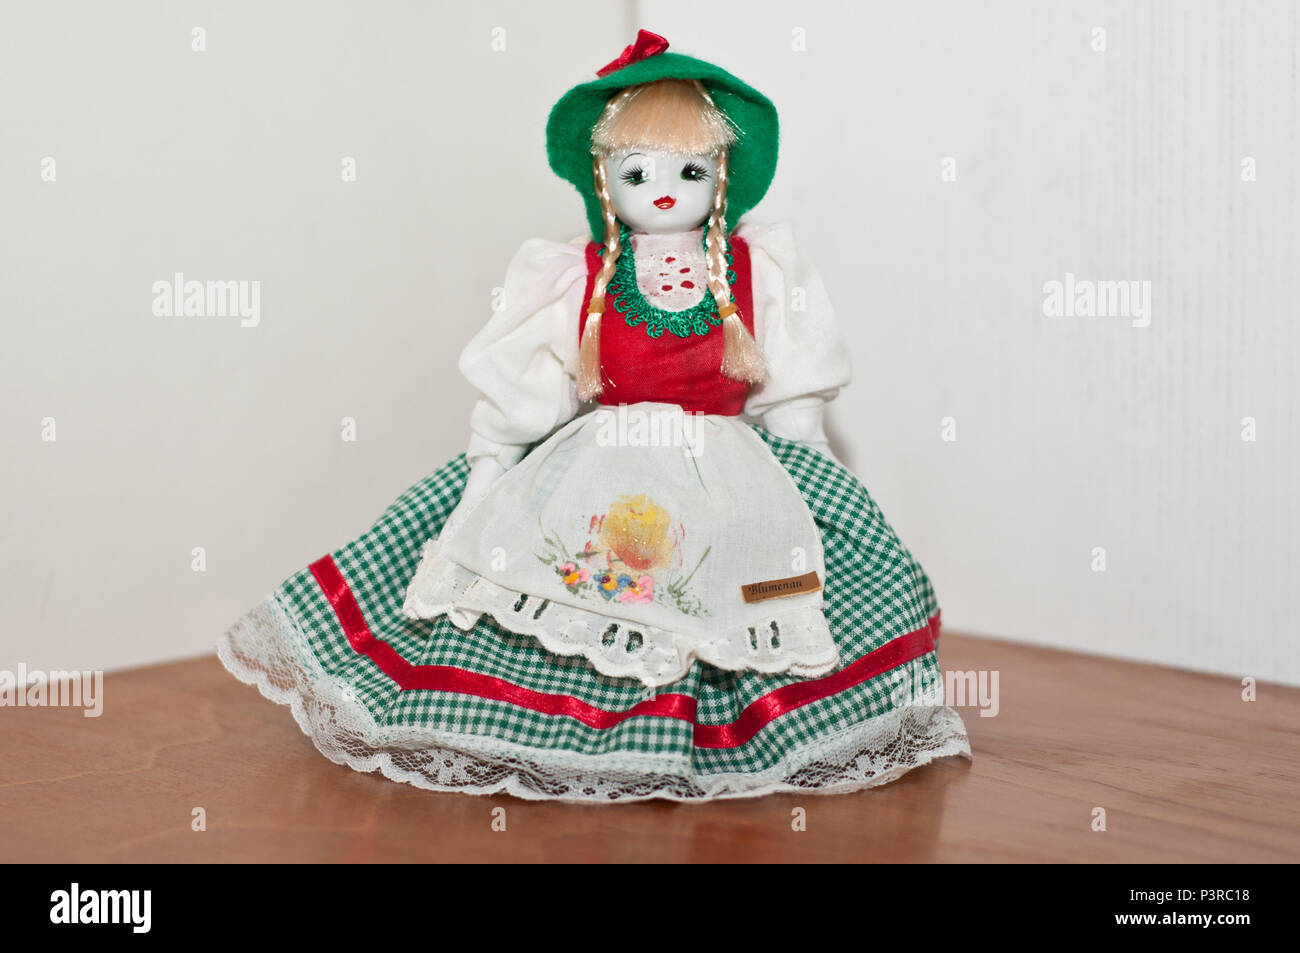 SÃO PAULO, SP - 16.11.2015: ARTESANATO SULISTA - Boneca de pano e porcelana, com traje típico alemão, produzida em Blumenau, SC. (Foto: Daniela Maria / Fotoarena) Stock Photo